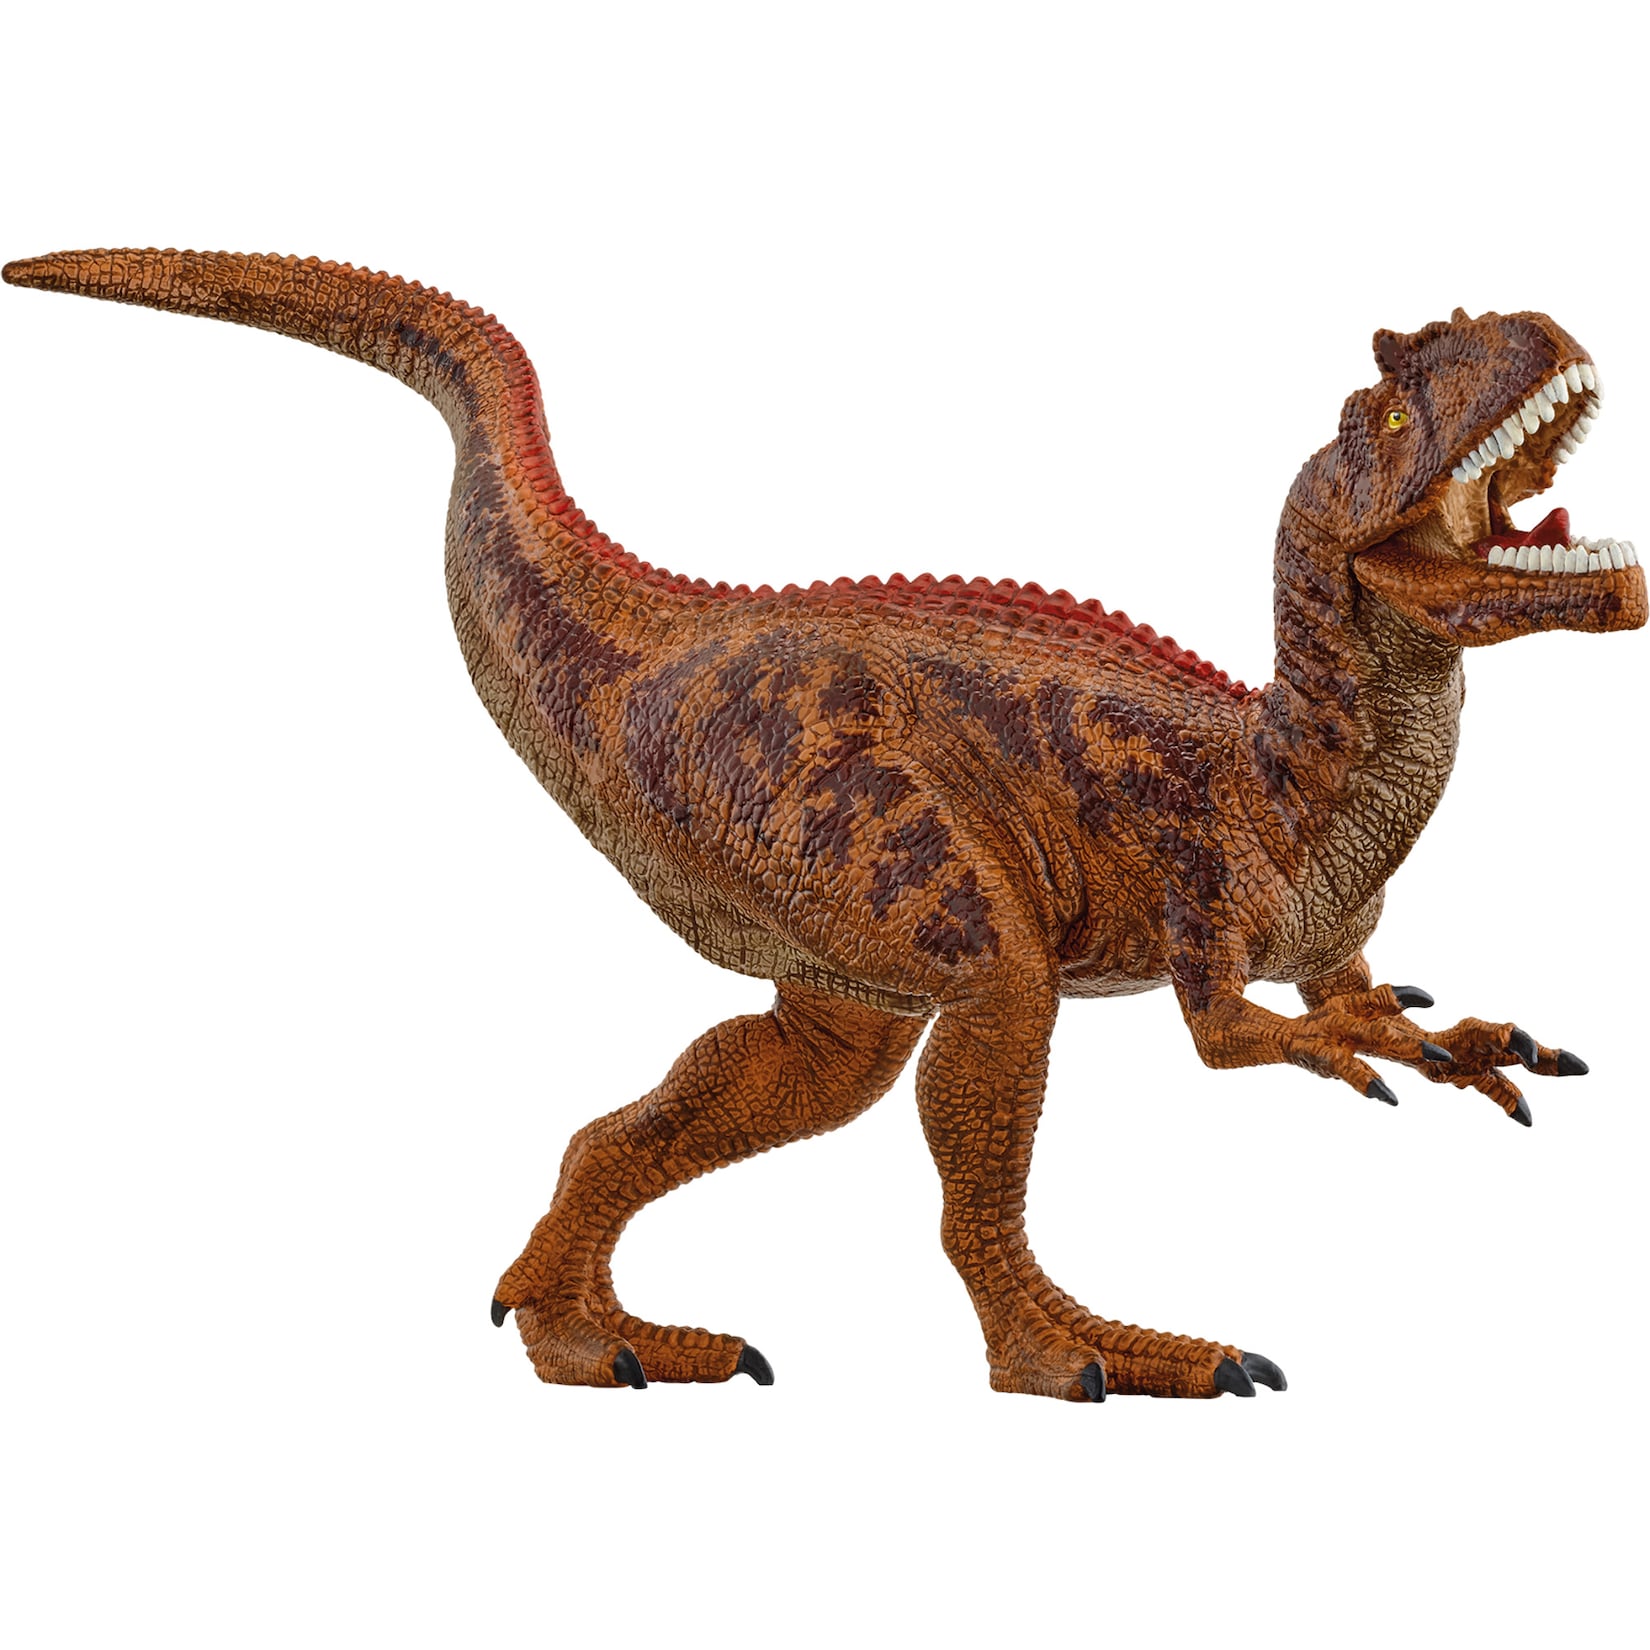 Schleich Spielfigur Dinosaurs Allosaurus